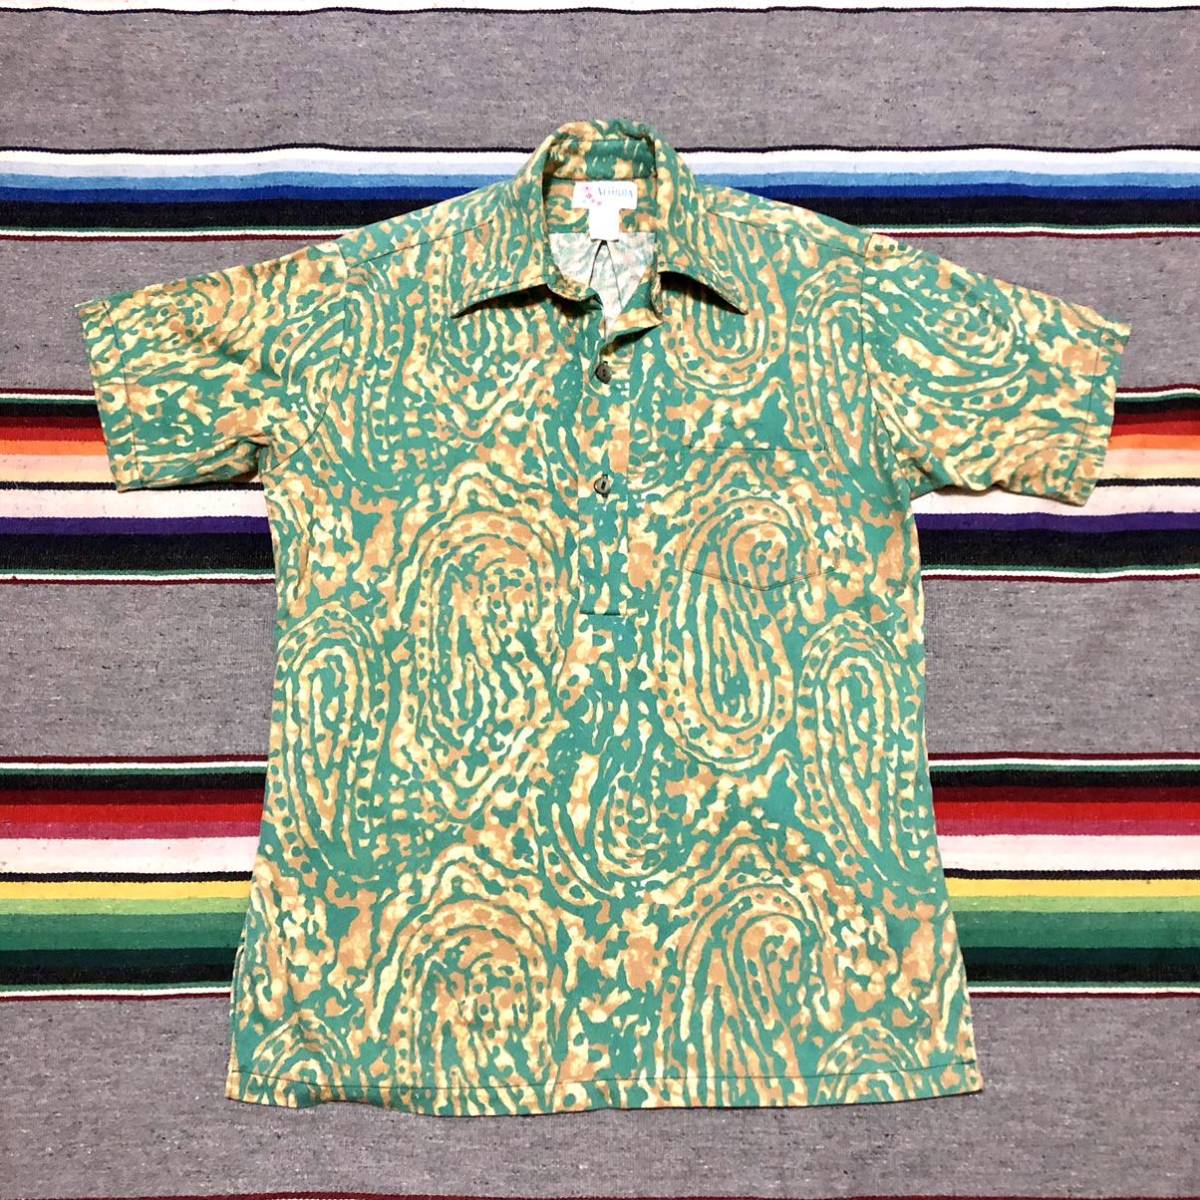 70’s Aliikoa プルオーバー Hawaiian Shirt 検索:古着 ビンテージ HAWAII アロハシャツ ハワイ コットン 70年代_画像5